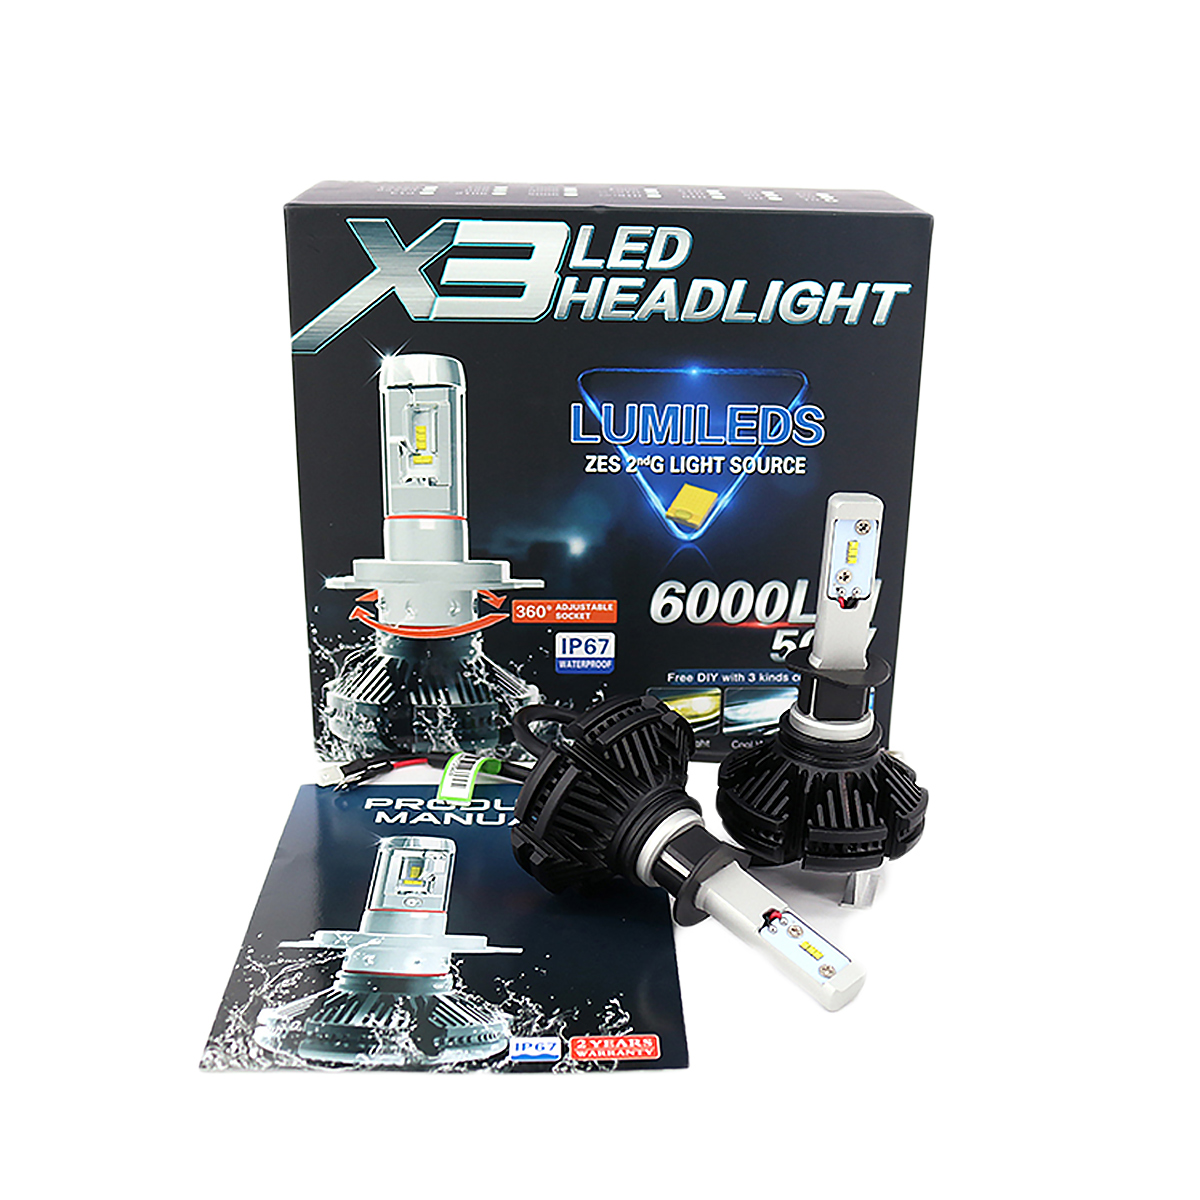 LED H3 2個入り LEDヘッドライト フォグランプ 6000LM ZESチップ 12V 24V 6500K 宅配便送料無料 6ヶ月保証